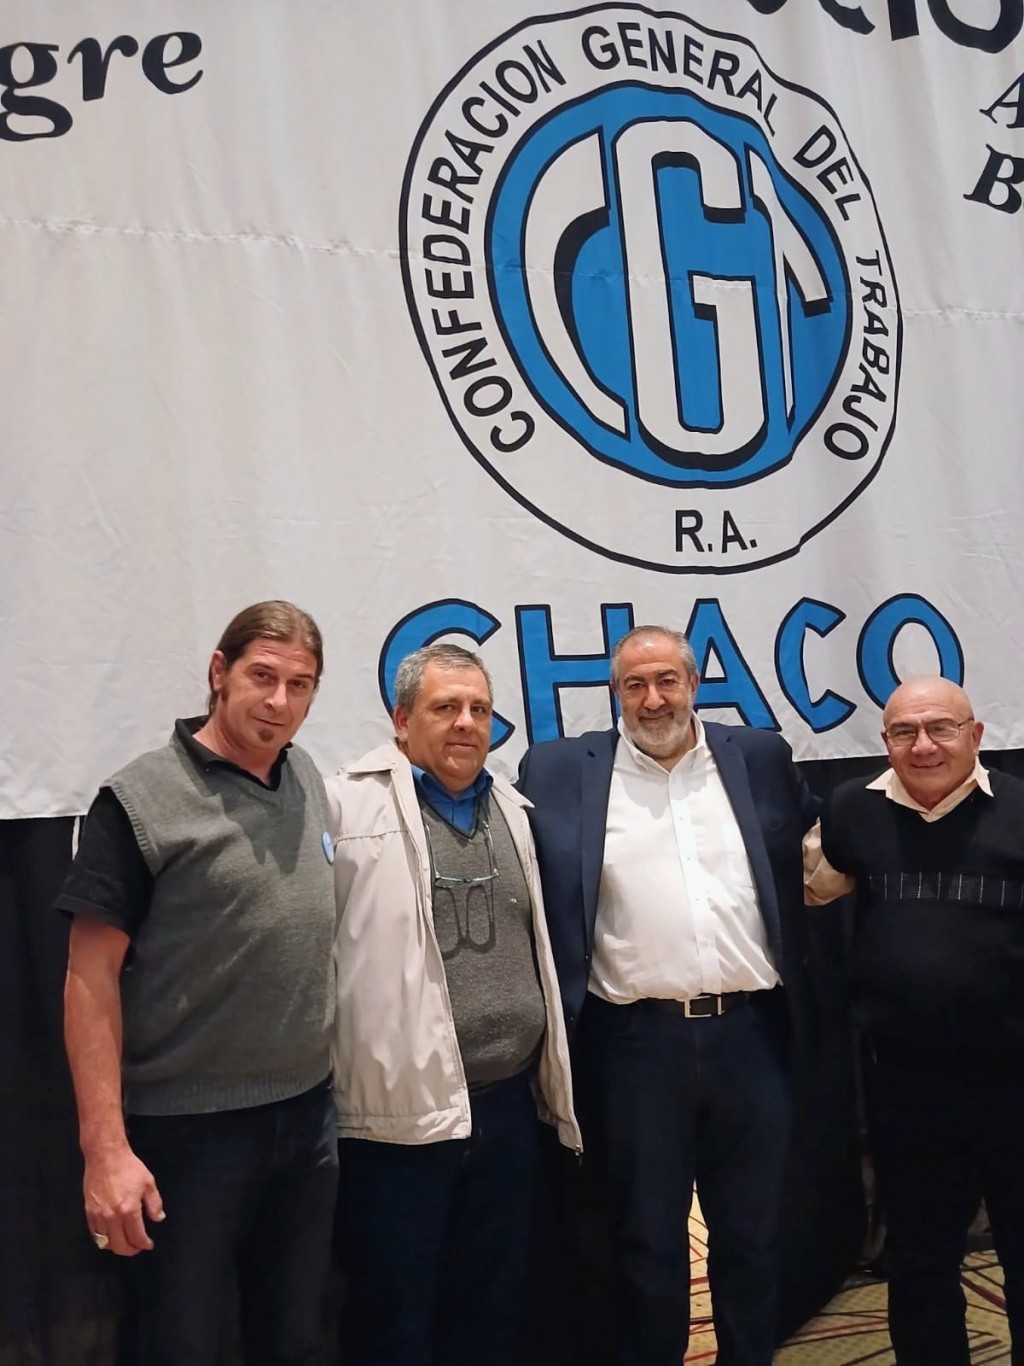 Mensaje de CGT Chaco, delegación de Castelli, con motivo del día del trabajador